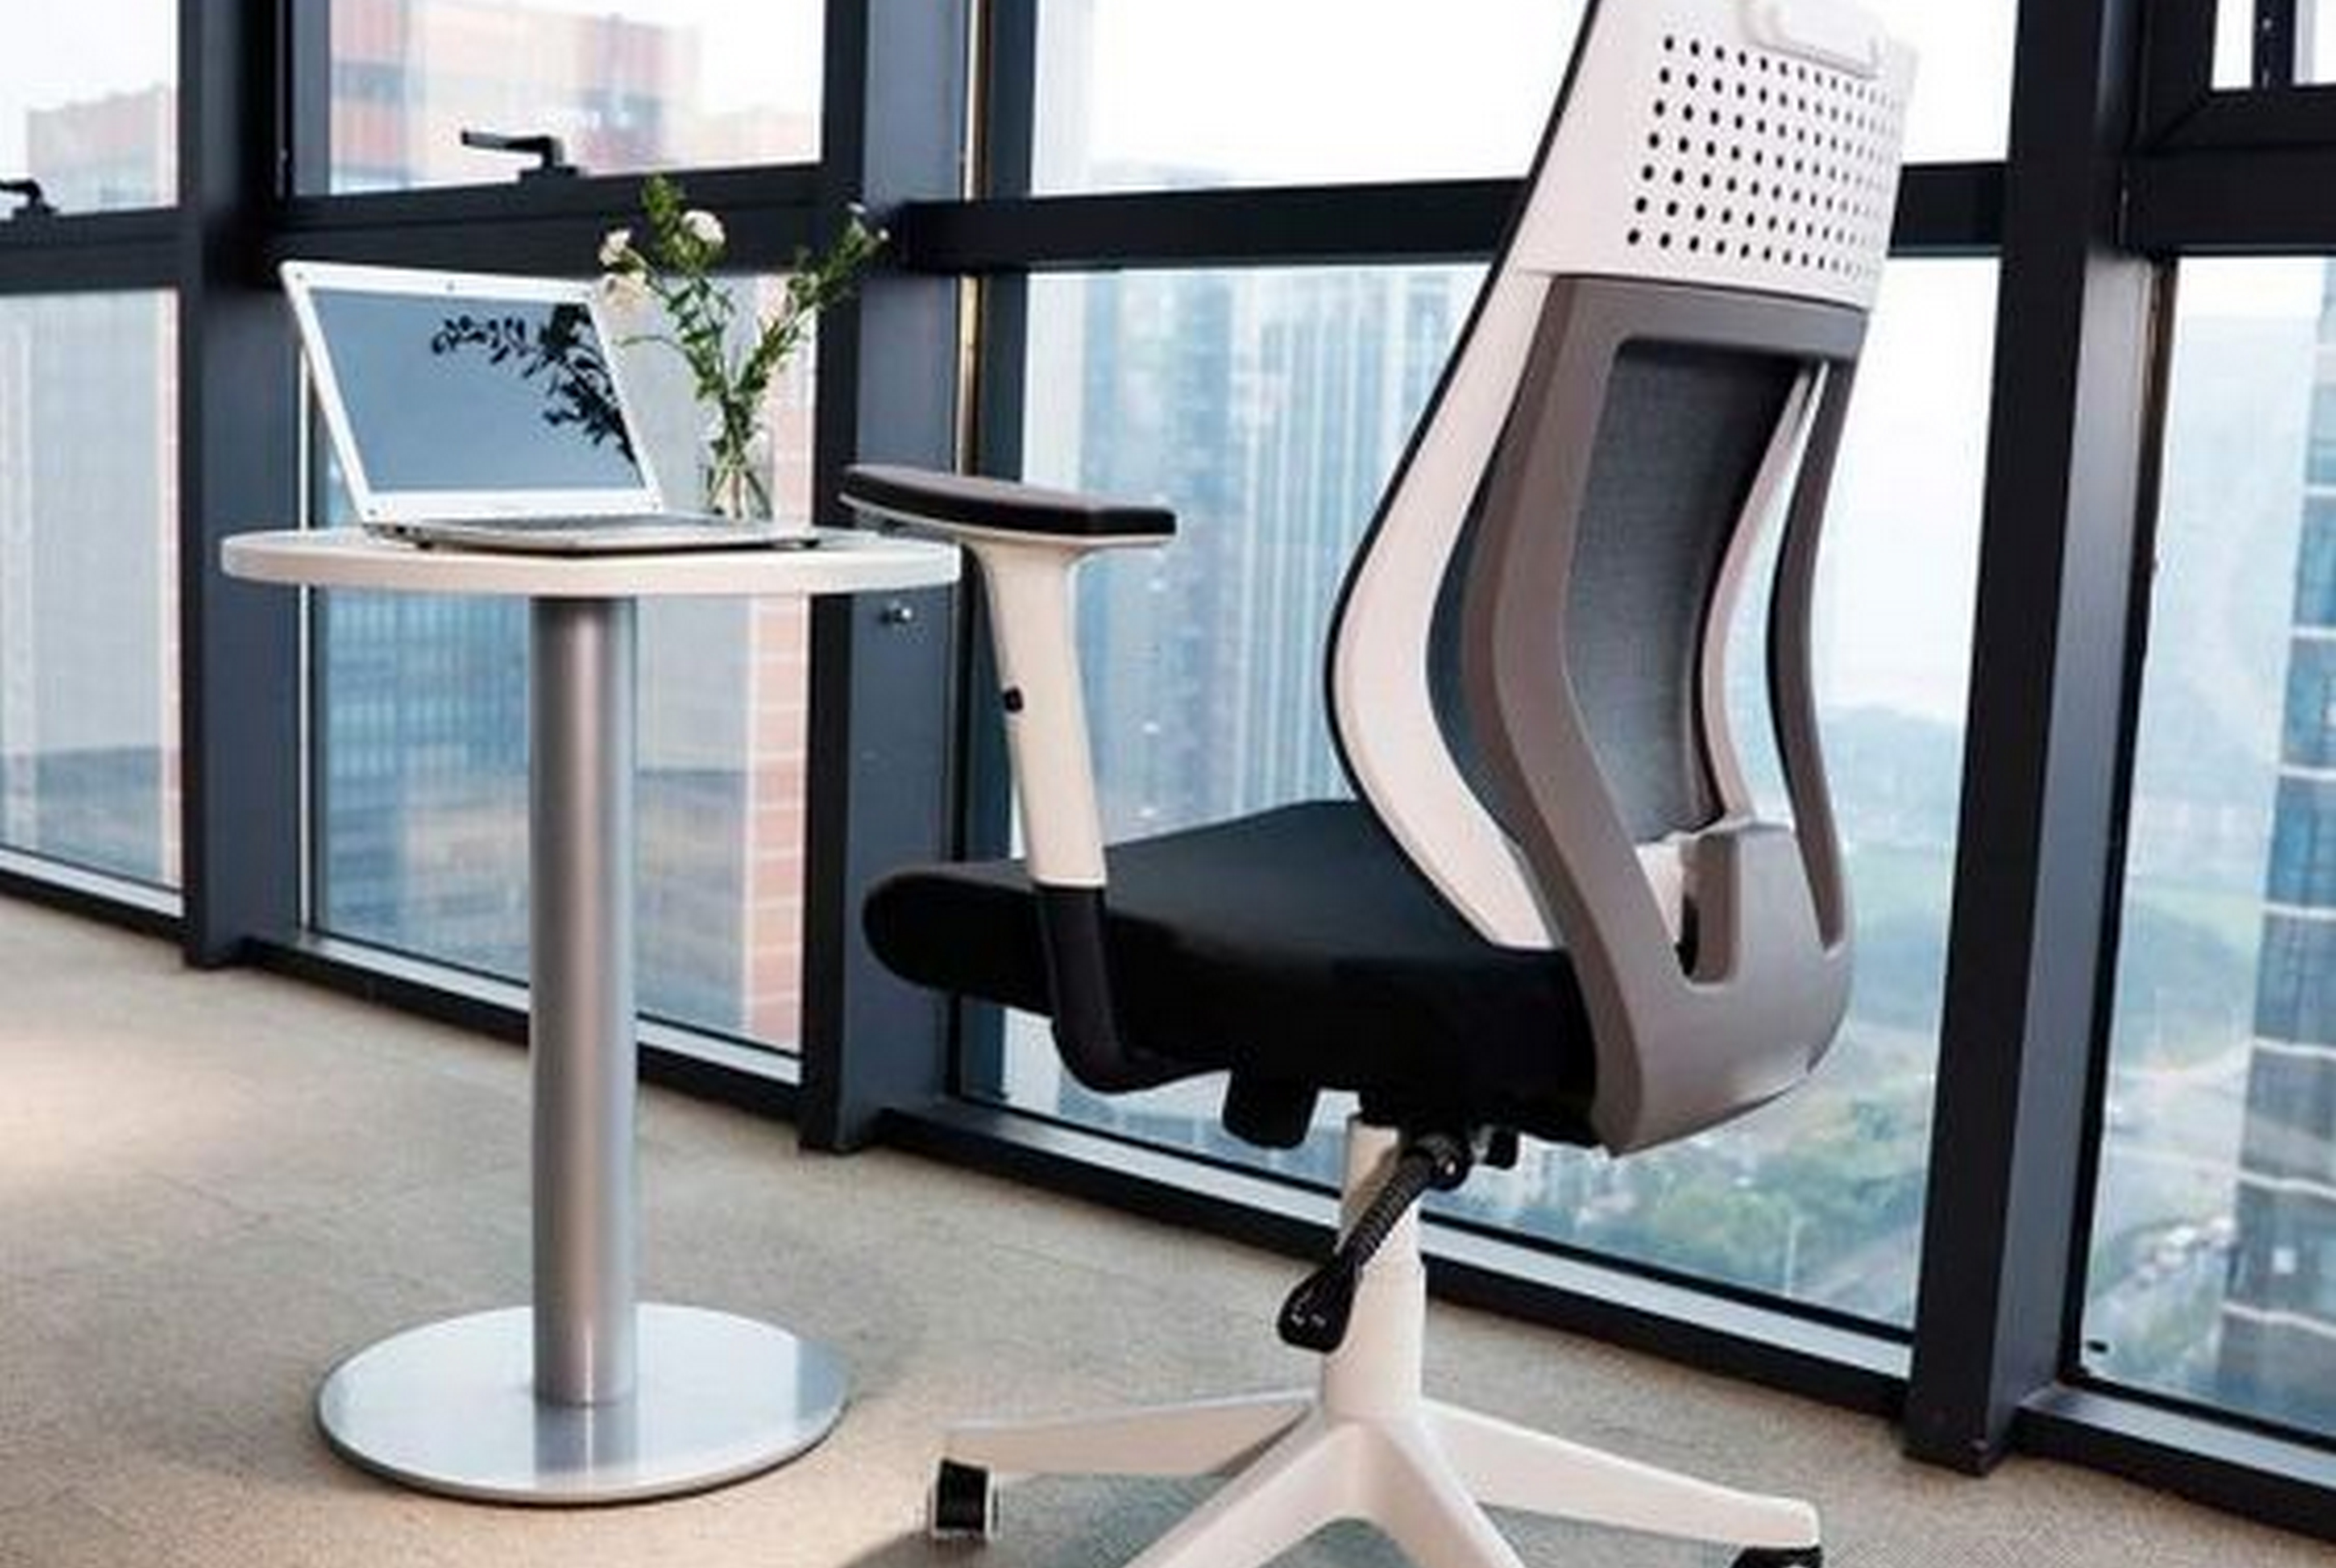 Самый дорогой офисный стул